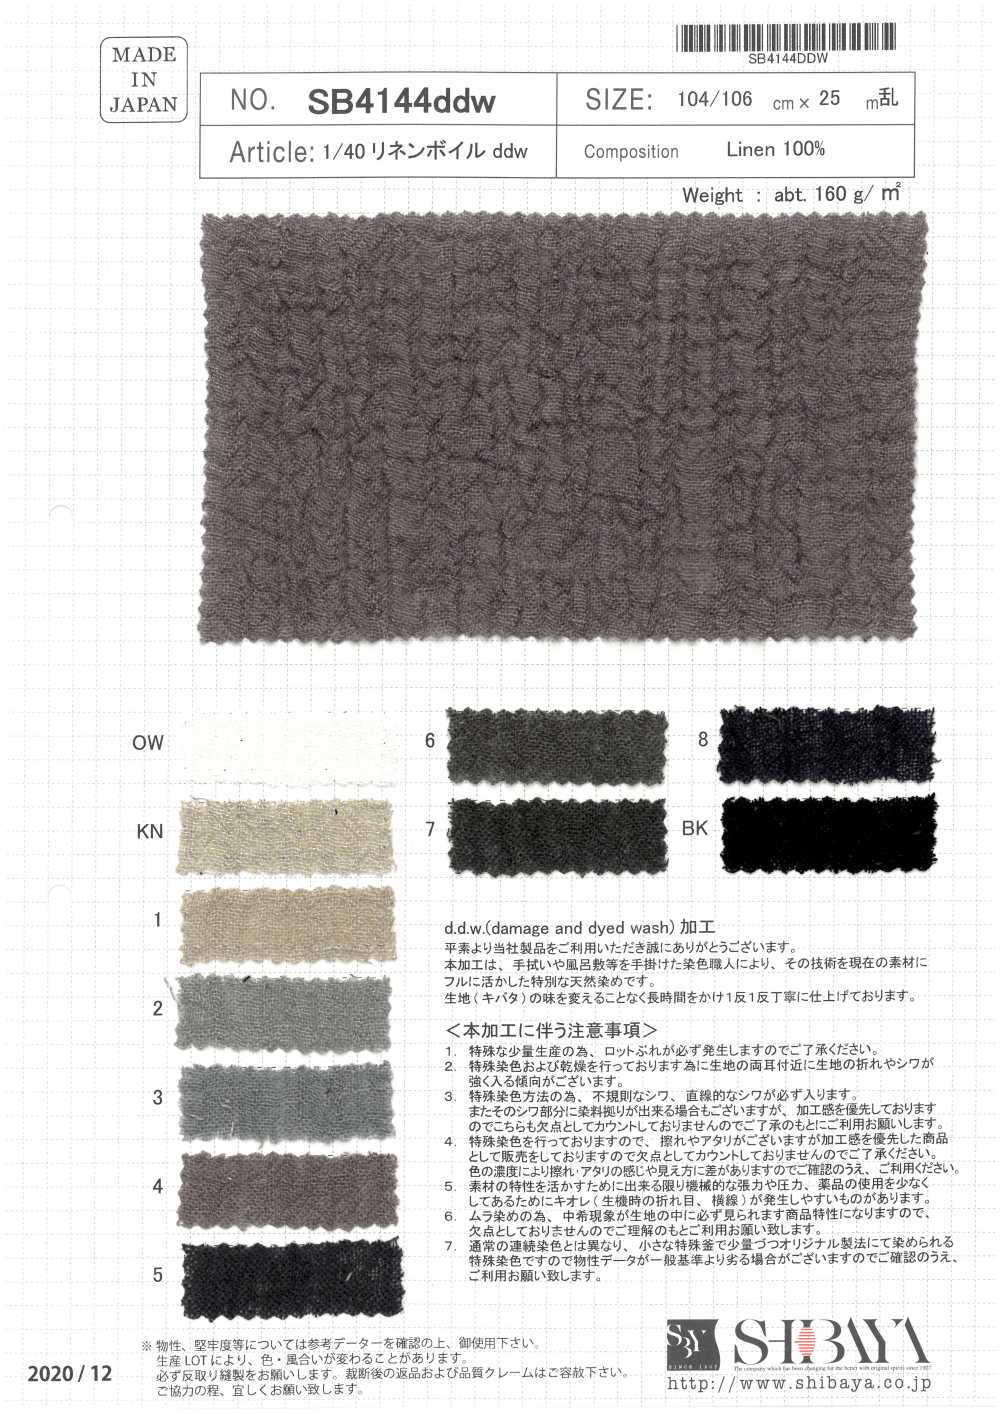 SB4144ddw 1/40 Leinen-Voile DDW[Textilgewebe] SHIBAYA